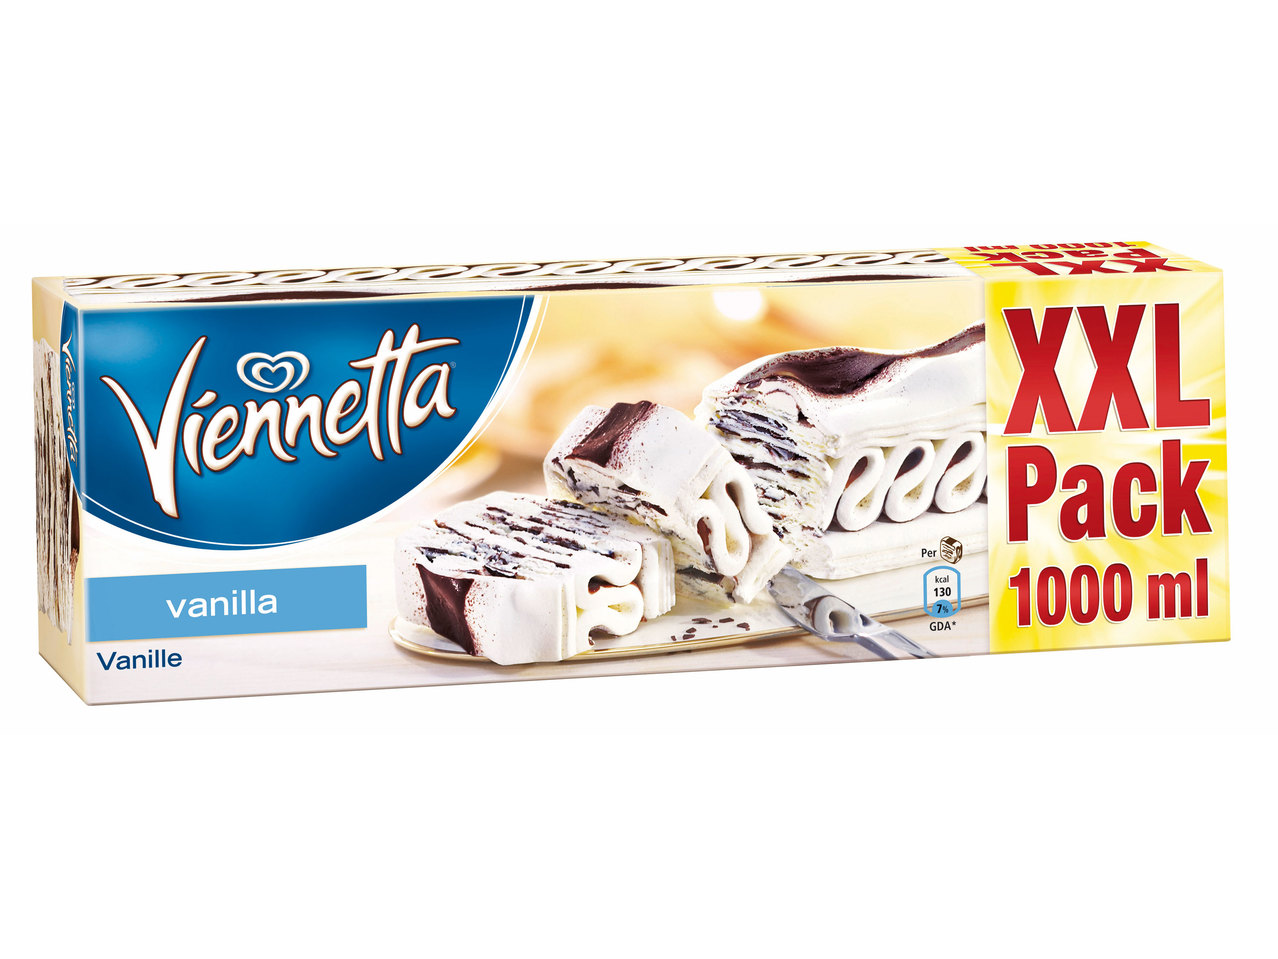 Viennetta Vanille XXL